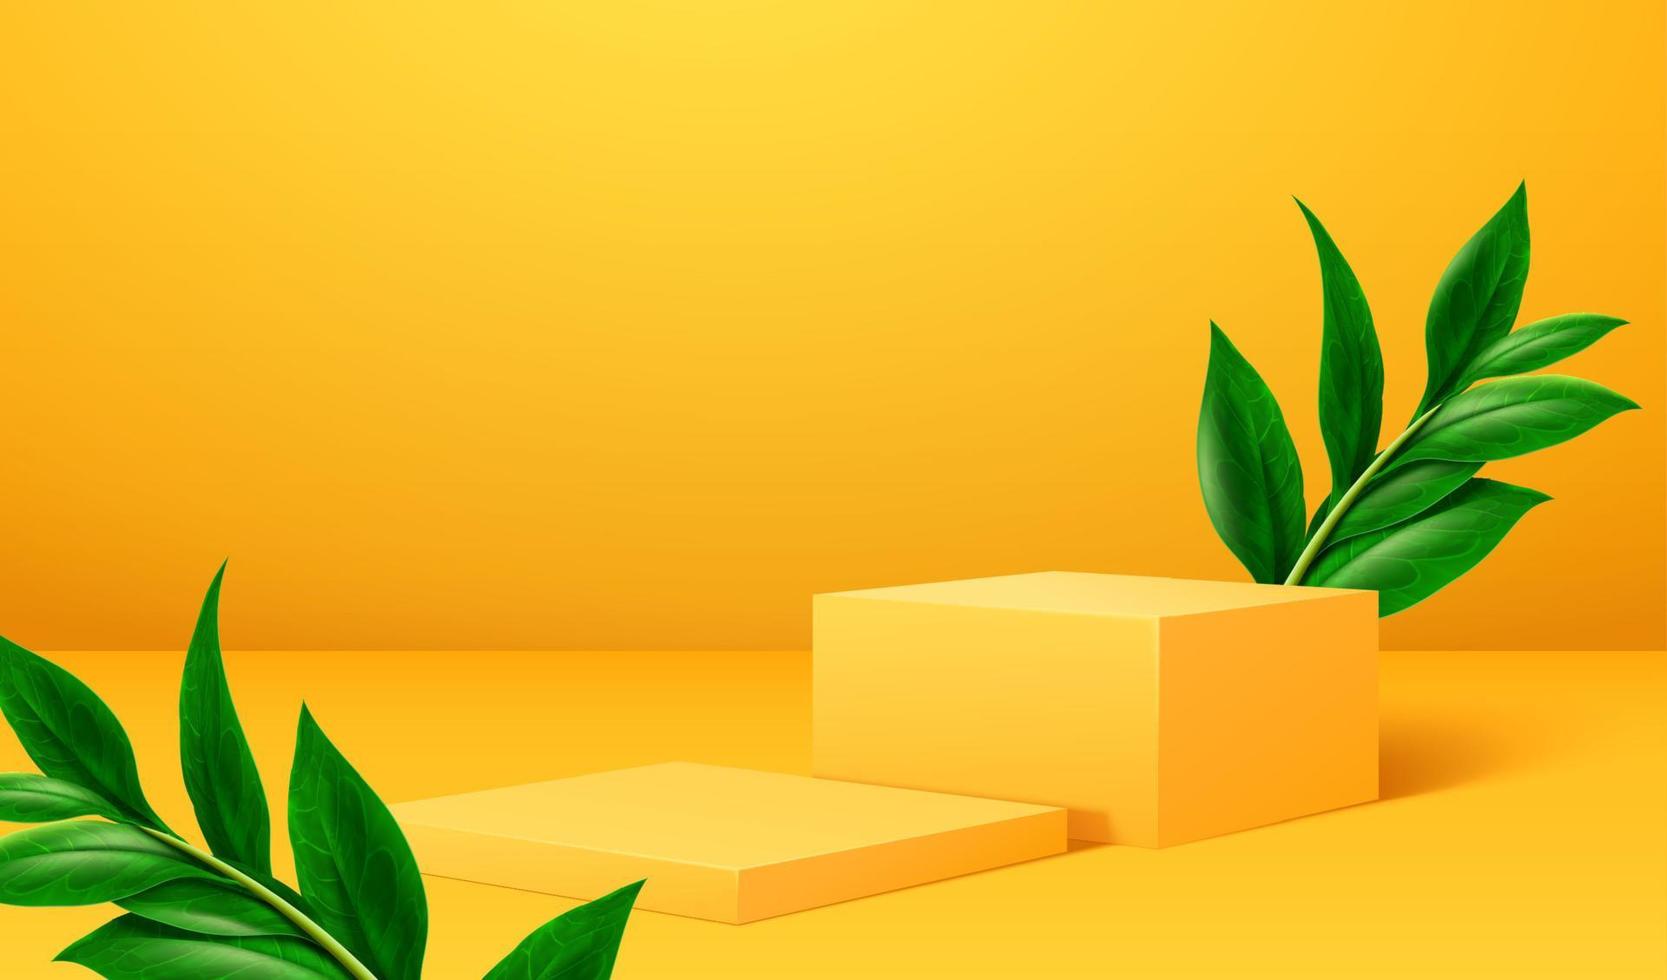 fond de podium jaune. Podium jaune 3d décoré de plantes tropicales pour l'affichage du produit sur fond jaune vecteur